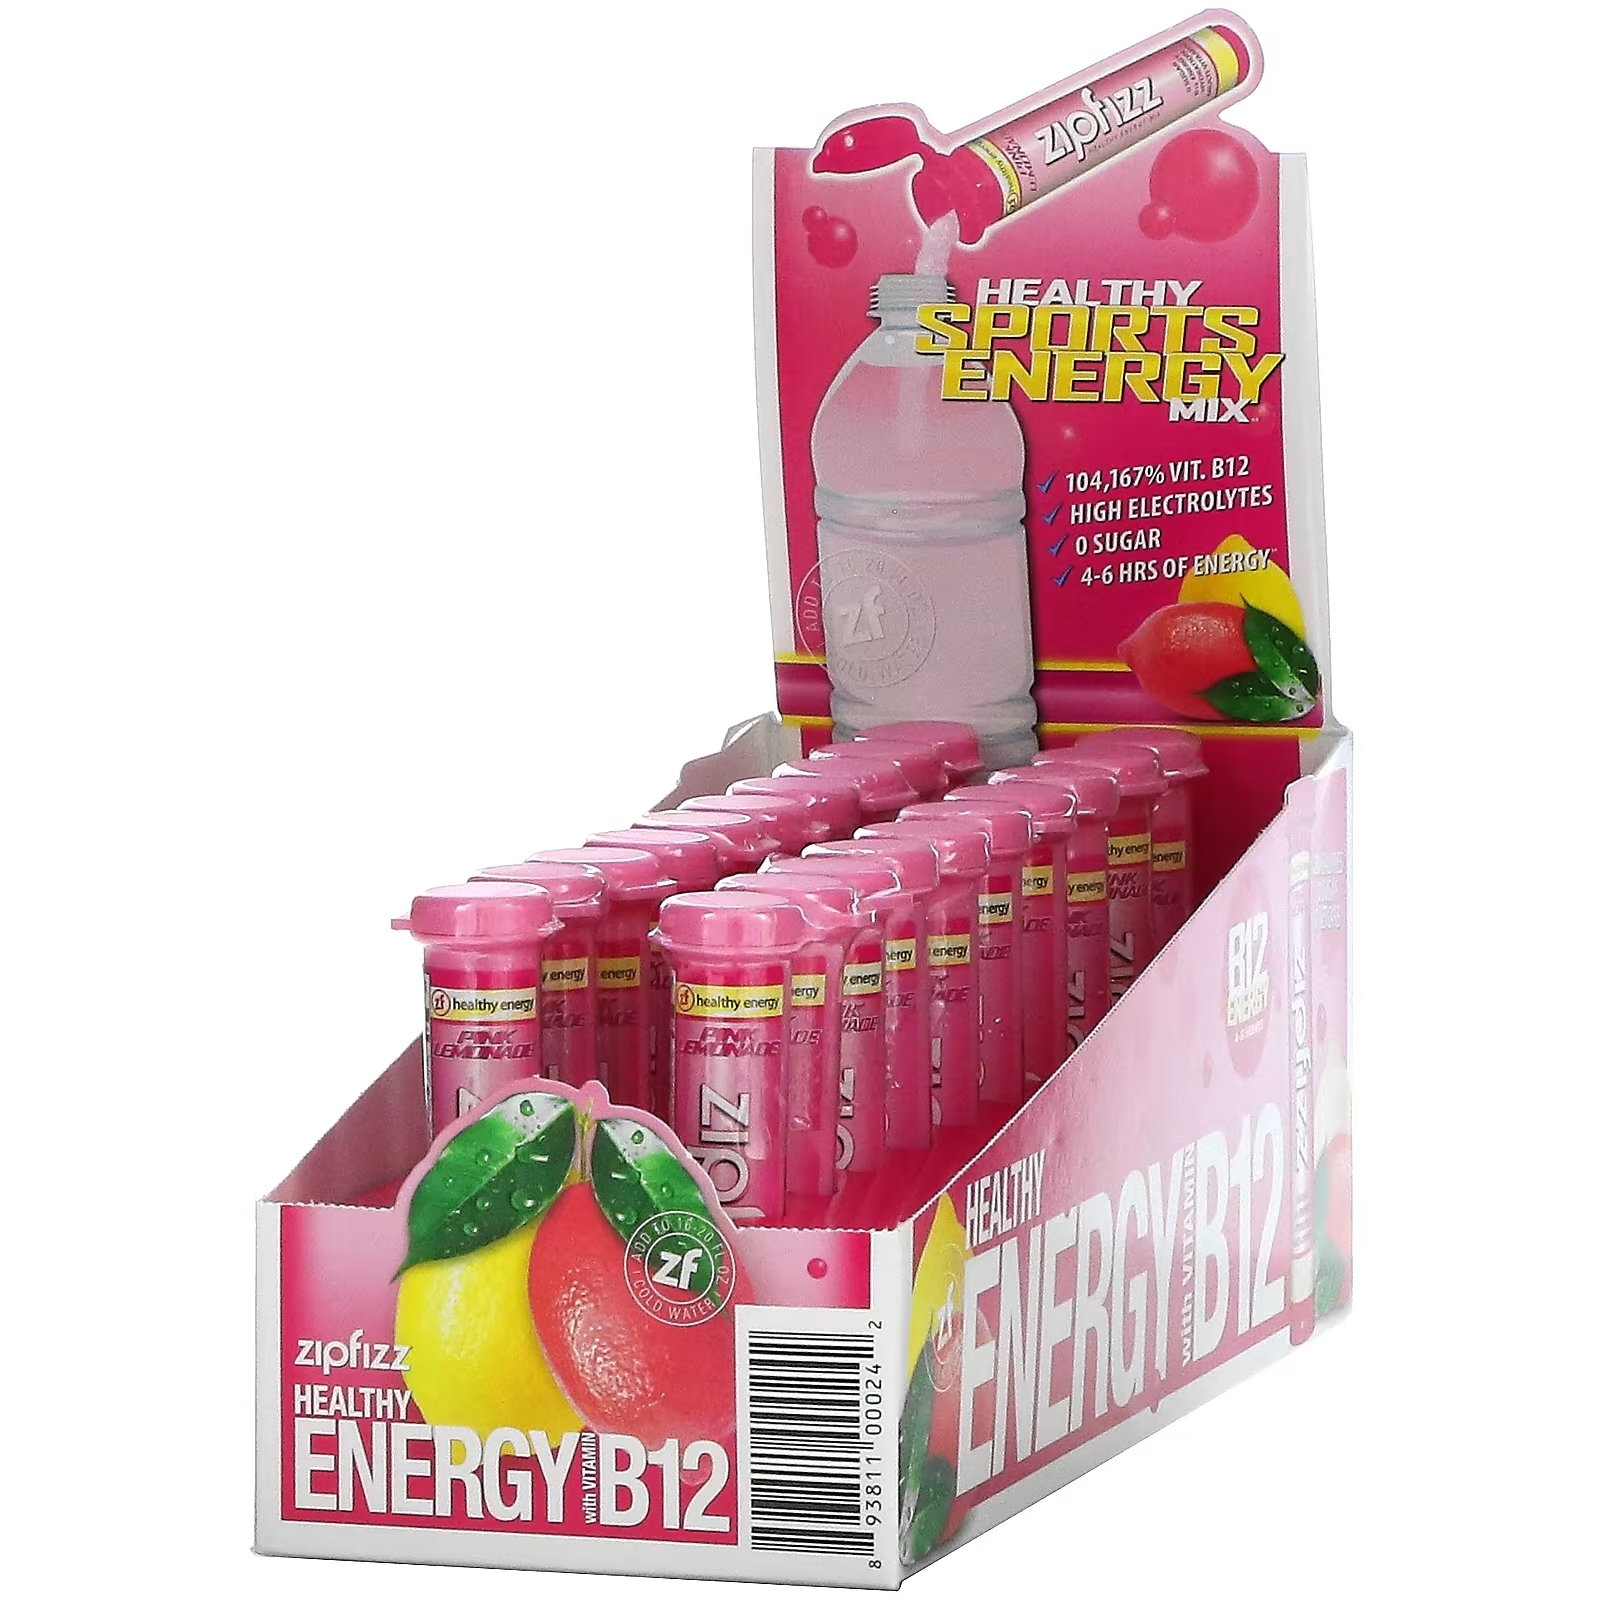 Zipfizz Энергетическая смесь для здорового спорта с витамином B12 розовый лимонад, 20 тюбиков zipfizz смесь для здоровой энергии с витамином b12 лимон 20 тюбиков по 11 г 0 39 унции